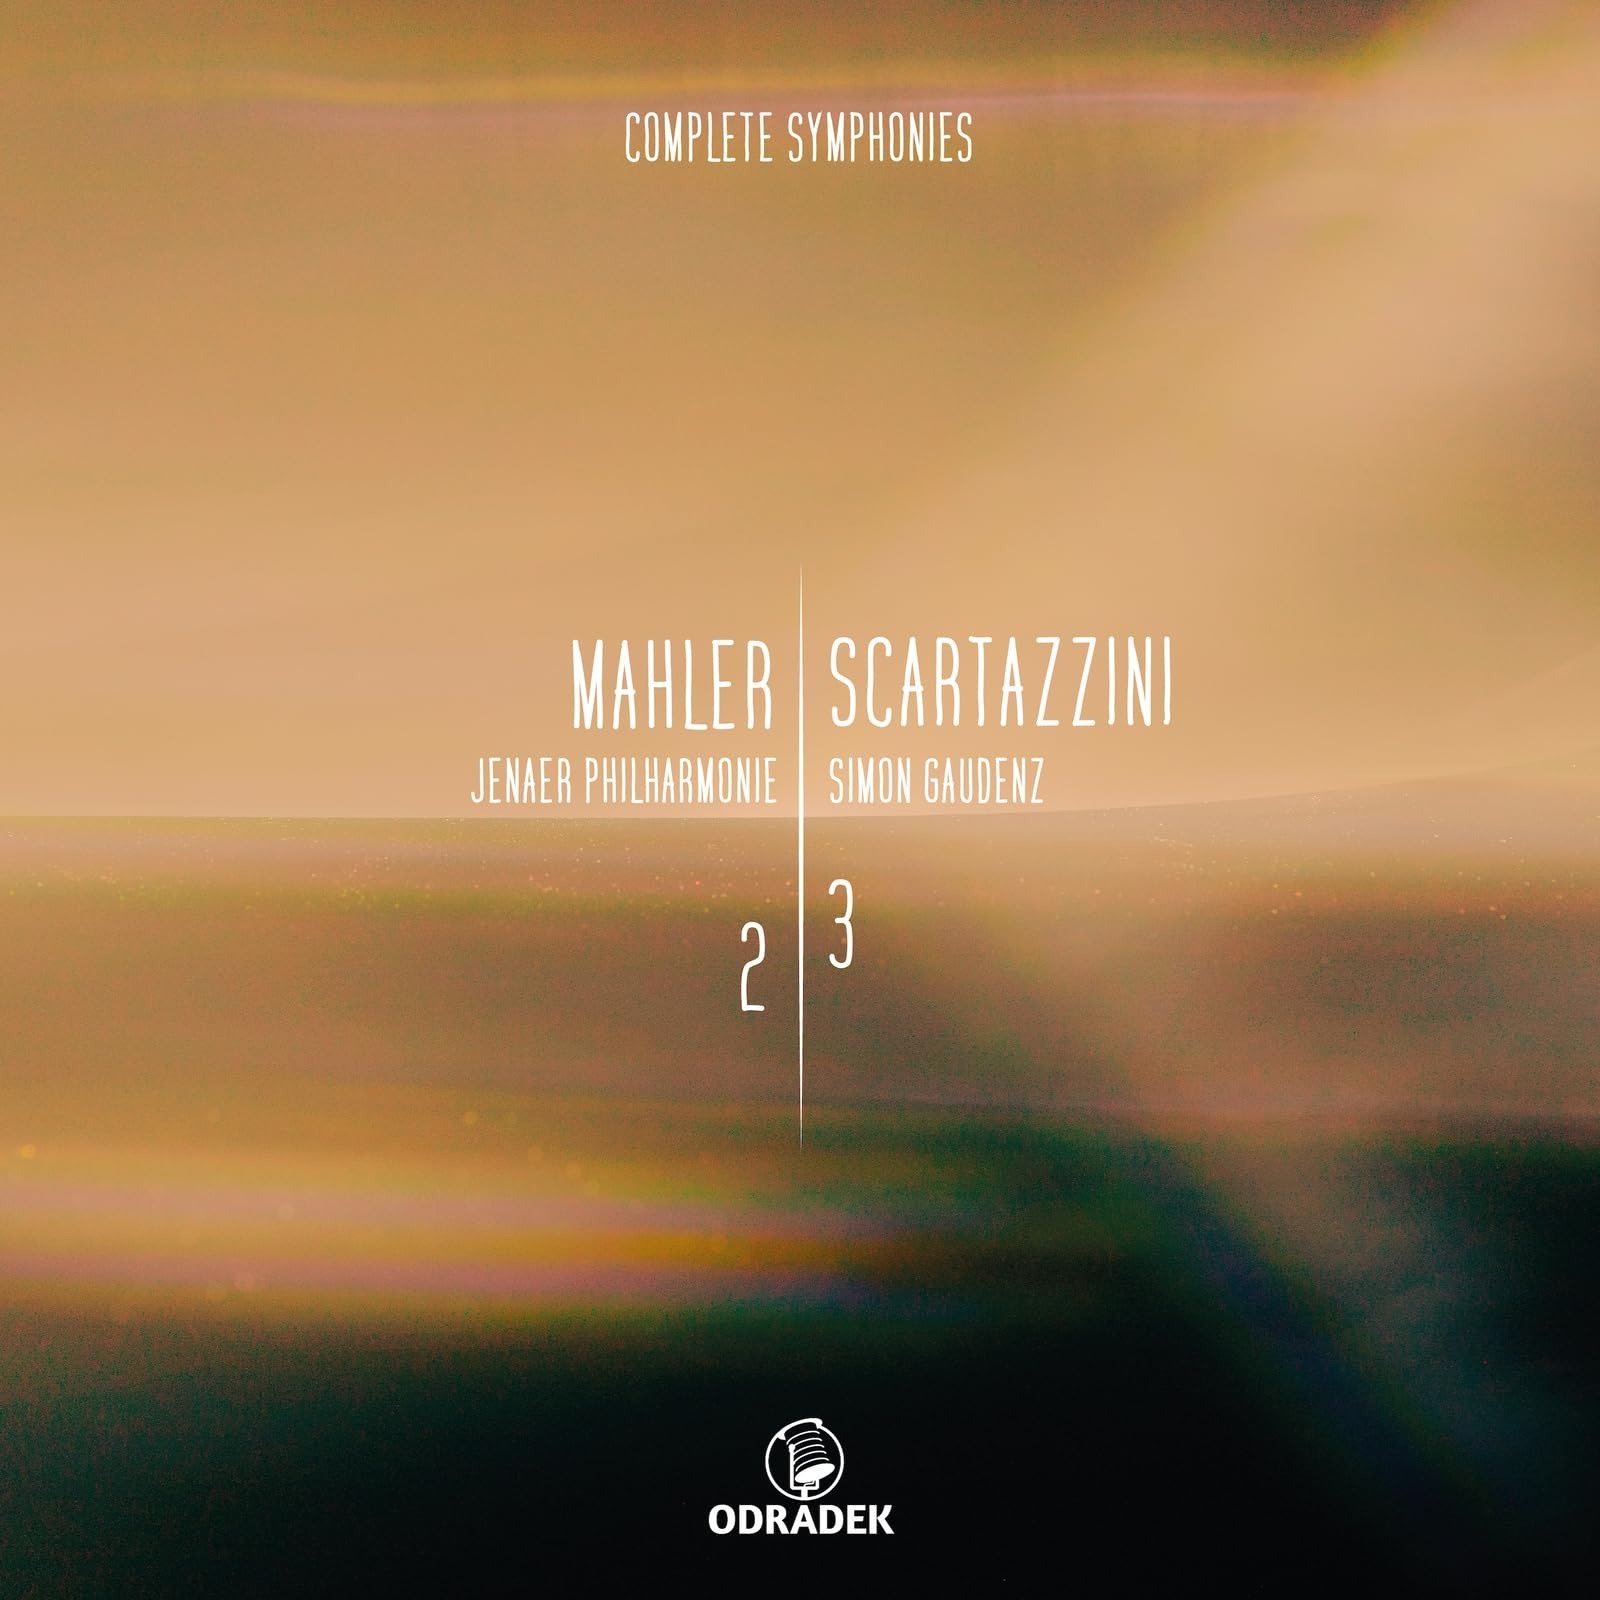 CD Shop - JENAER PHILHARMONIE MAHLER, SCARTAZZINI: COMPLETE SYMPHONIES VOL. 2